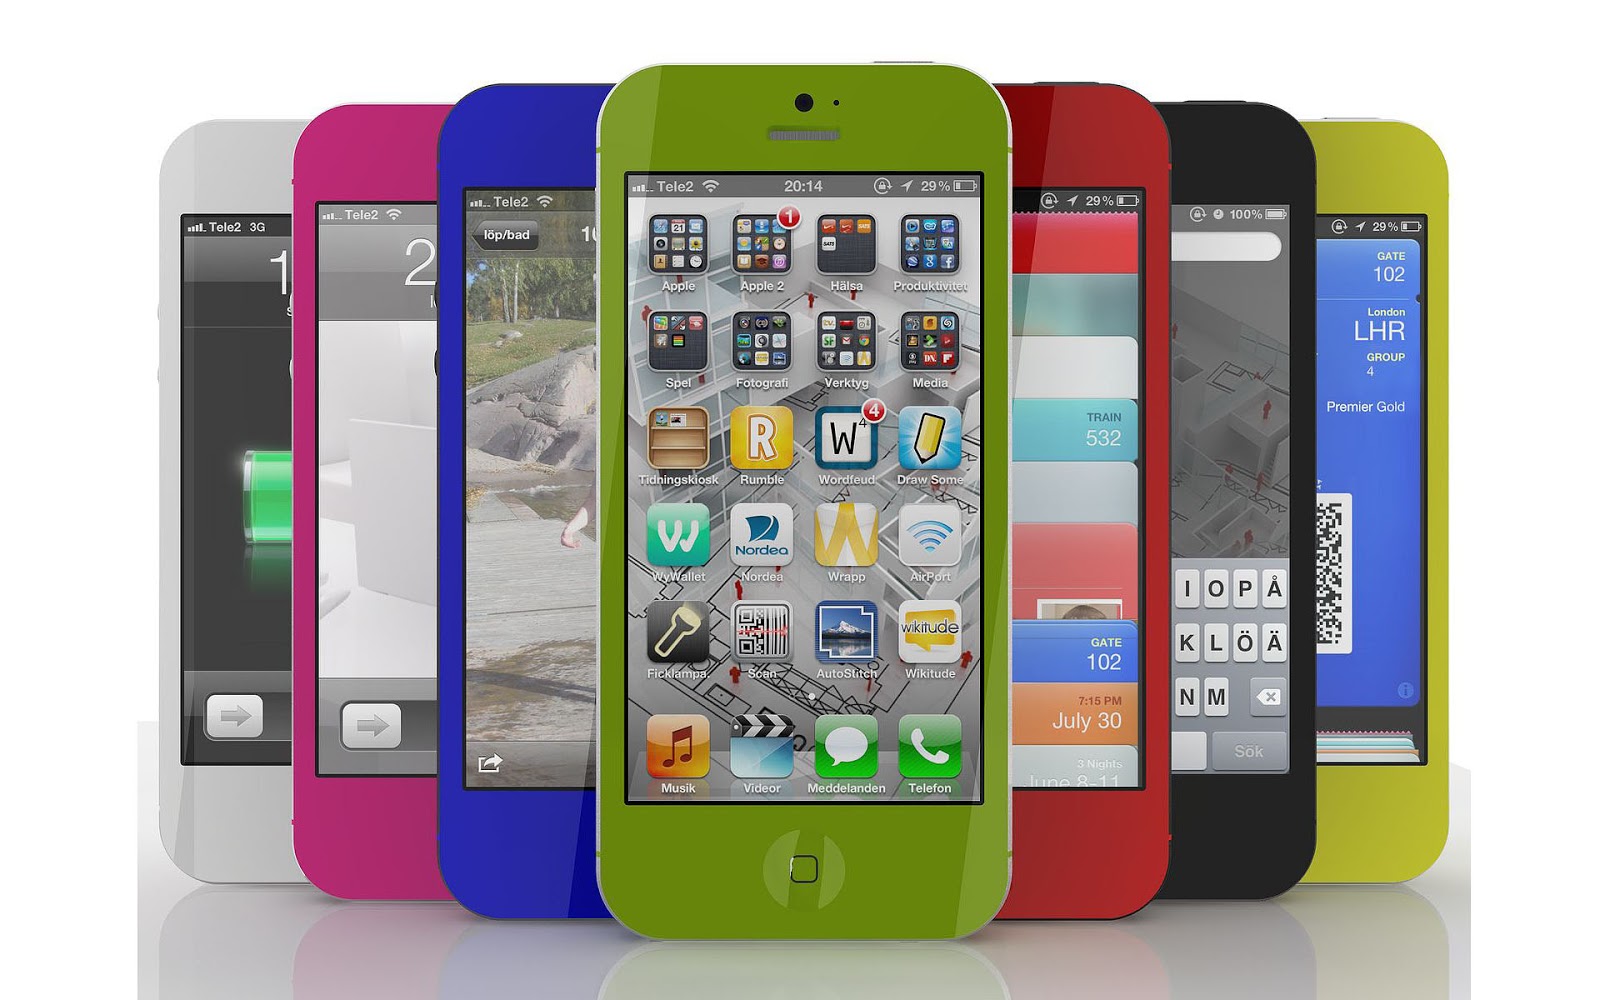 http://4.bp.blogspot.com/-X6gCGw-t1vI/UJFhORv86EI/AAAAAAAAIWs/fx1LWPVjI7w/s1600/de-iphone-5-in-verschillende-kleuren-hd-iphone-5-achtergrond.jpg